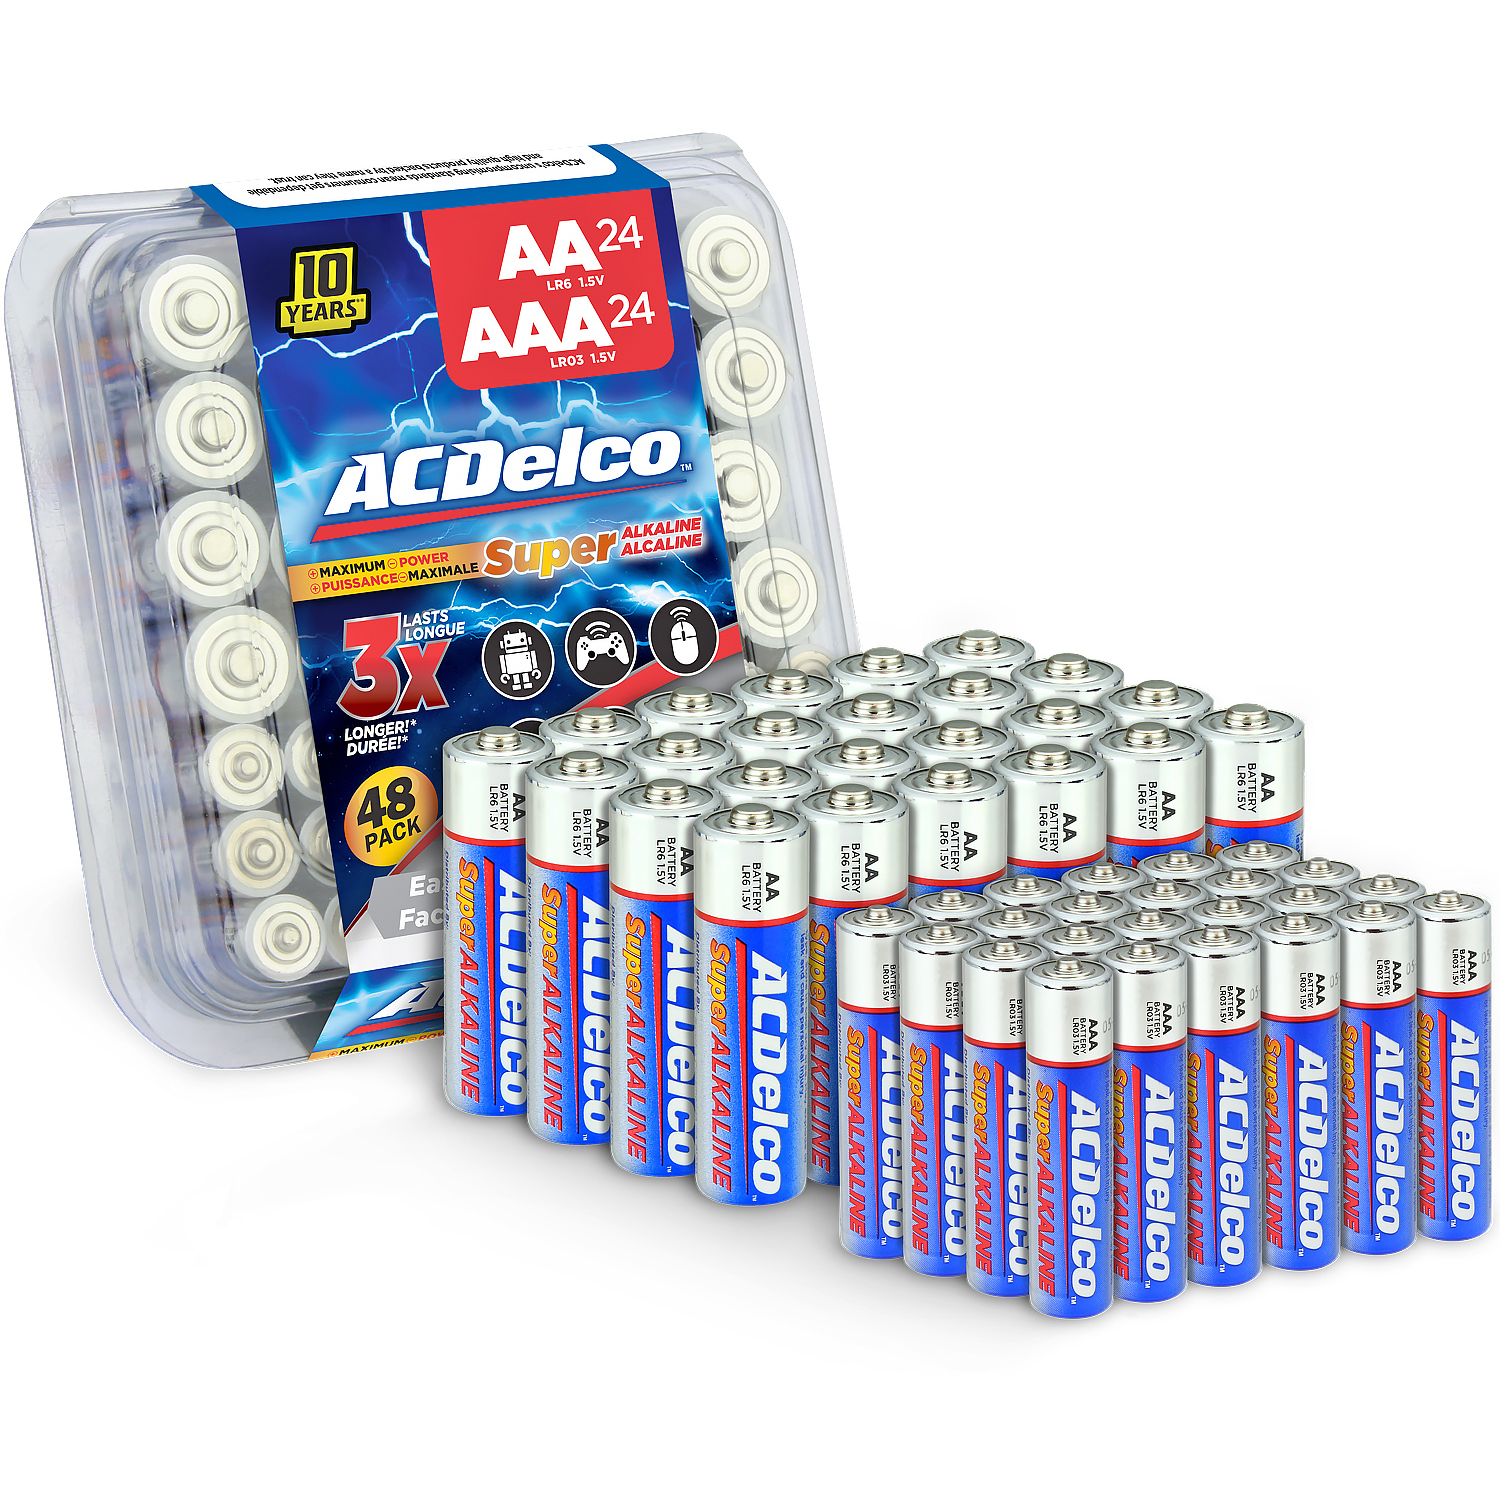 24 Count ACDelco AAA Batteries Alkaline Battery 